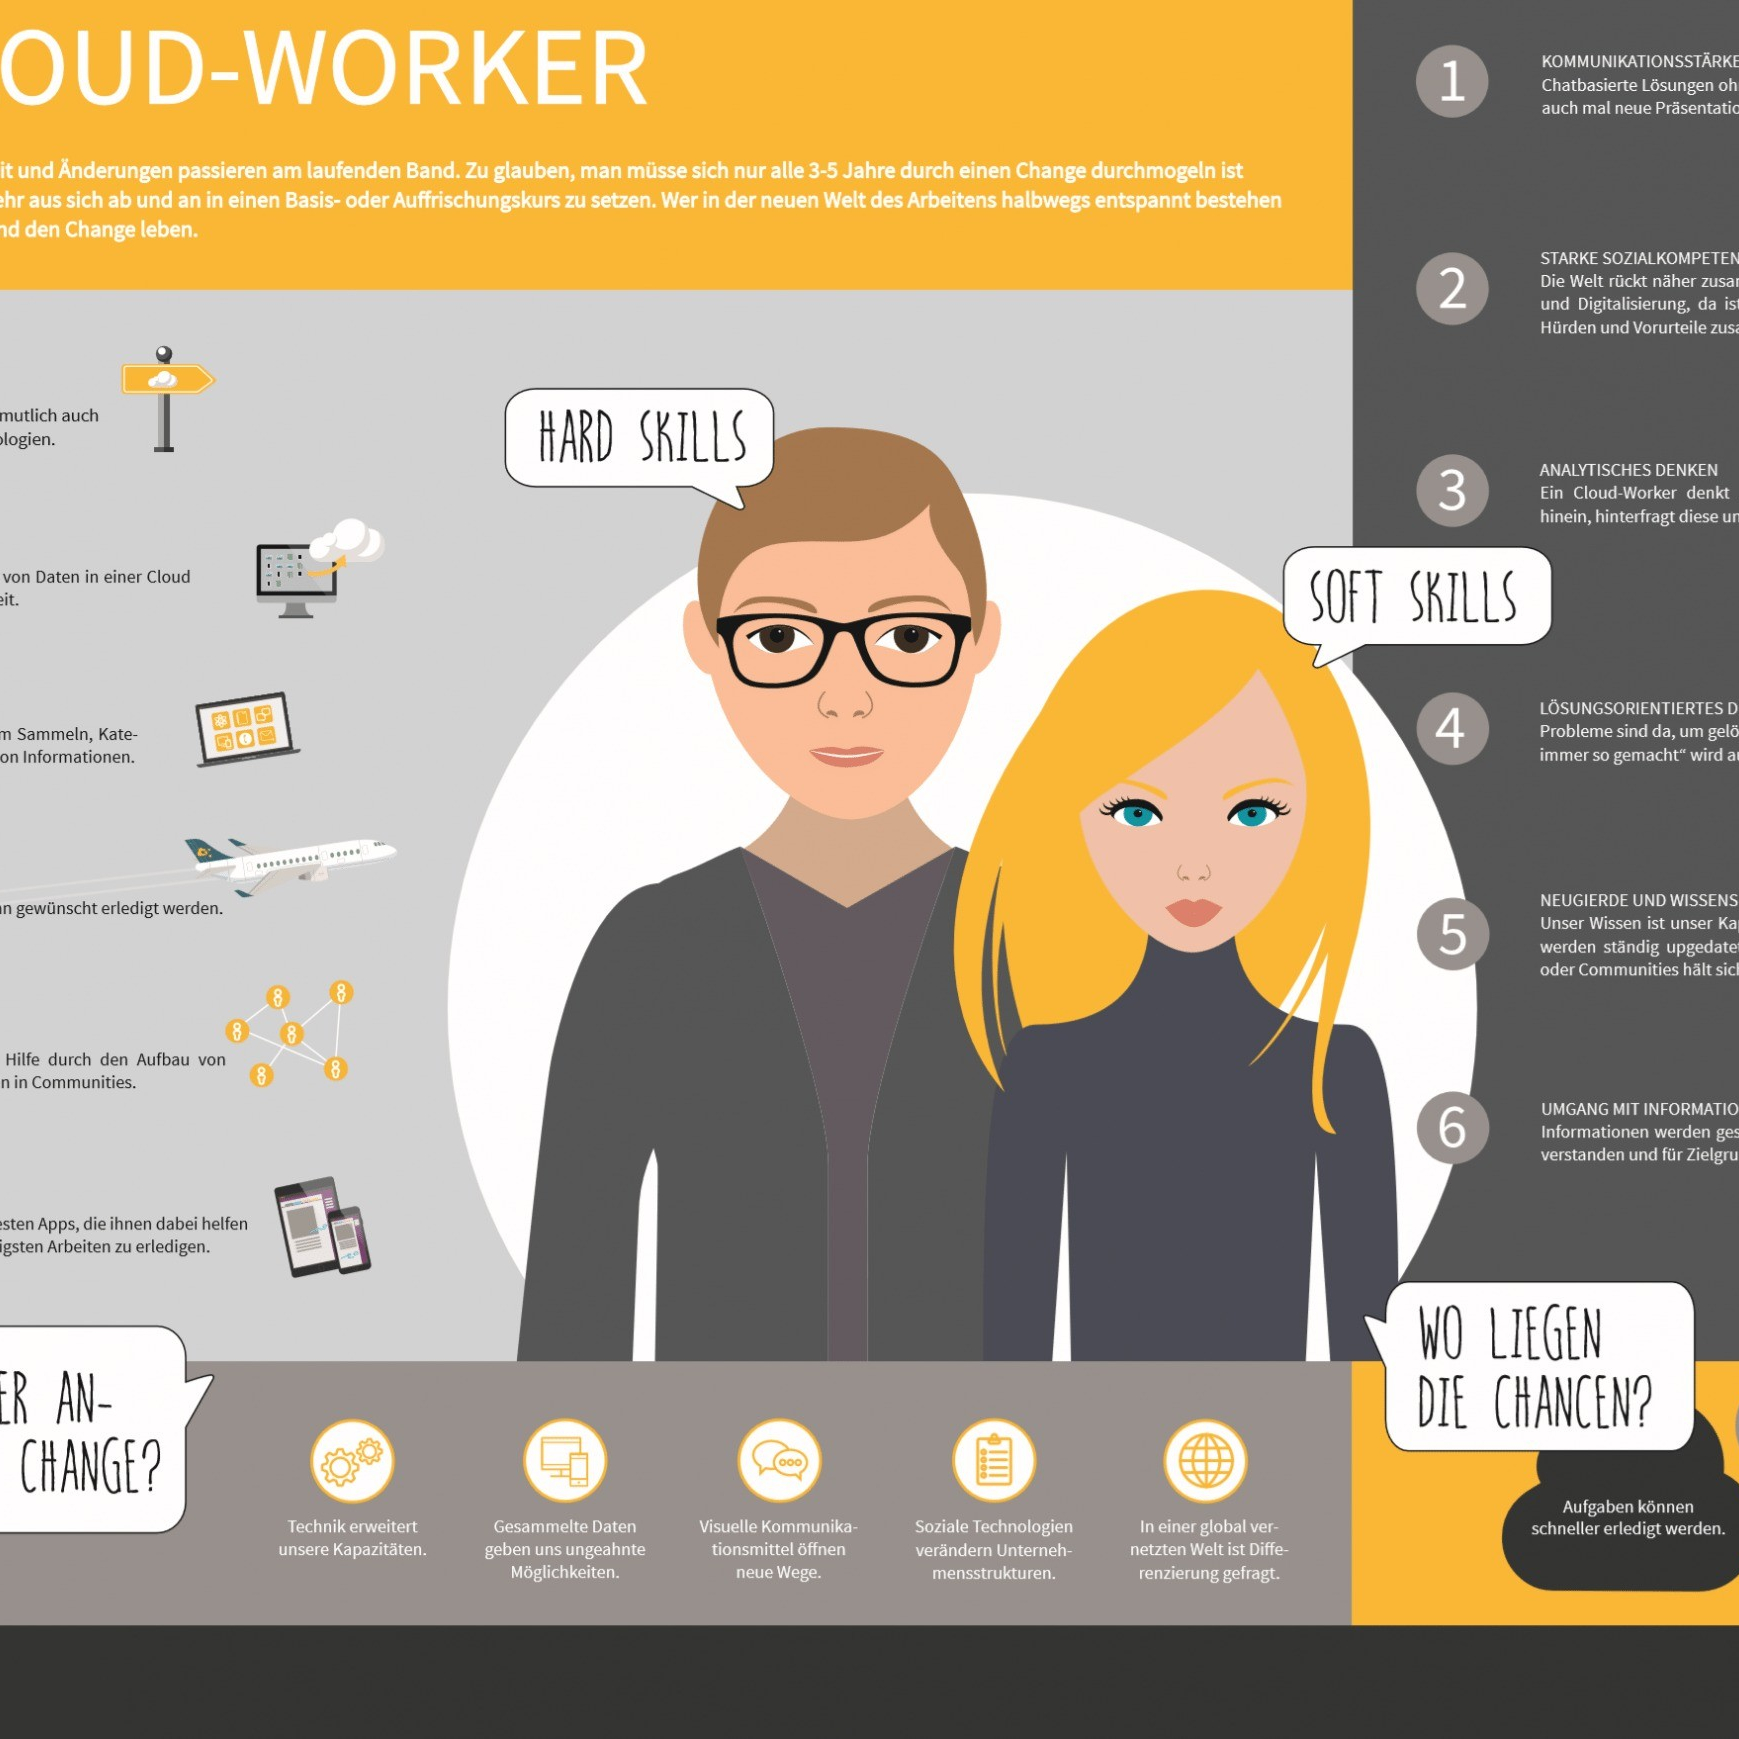 nuboVisual - der cloud-worker